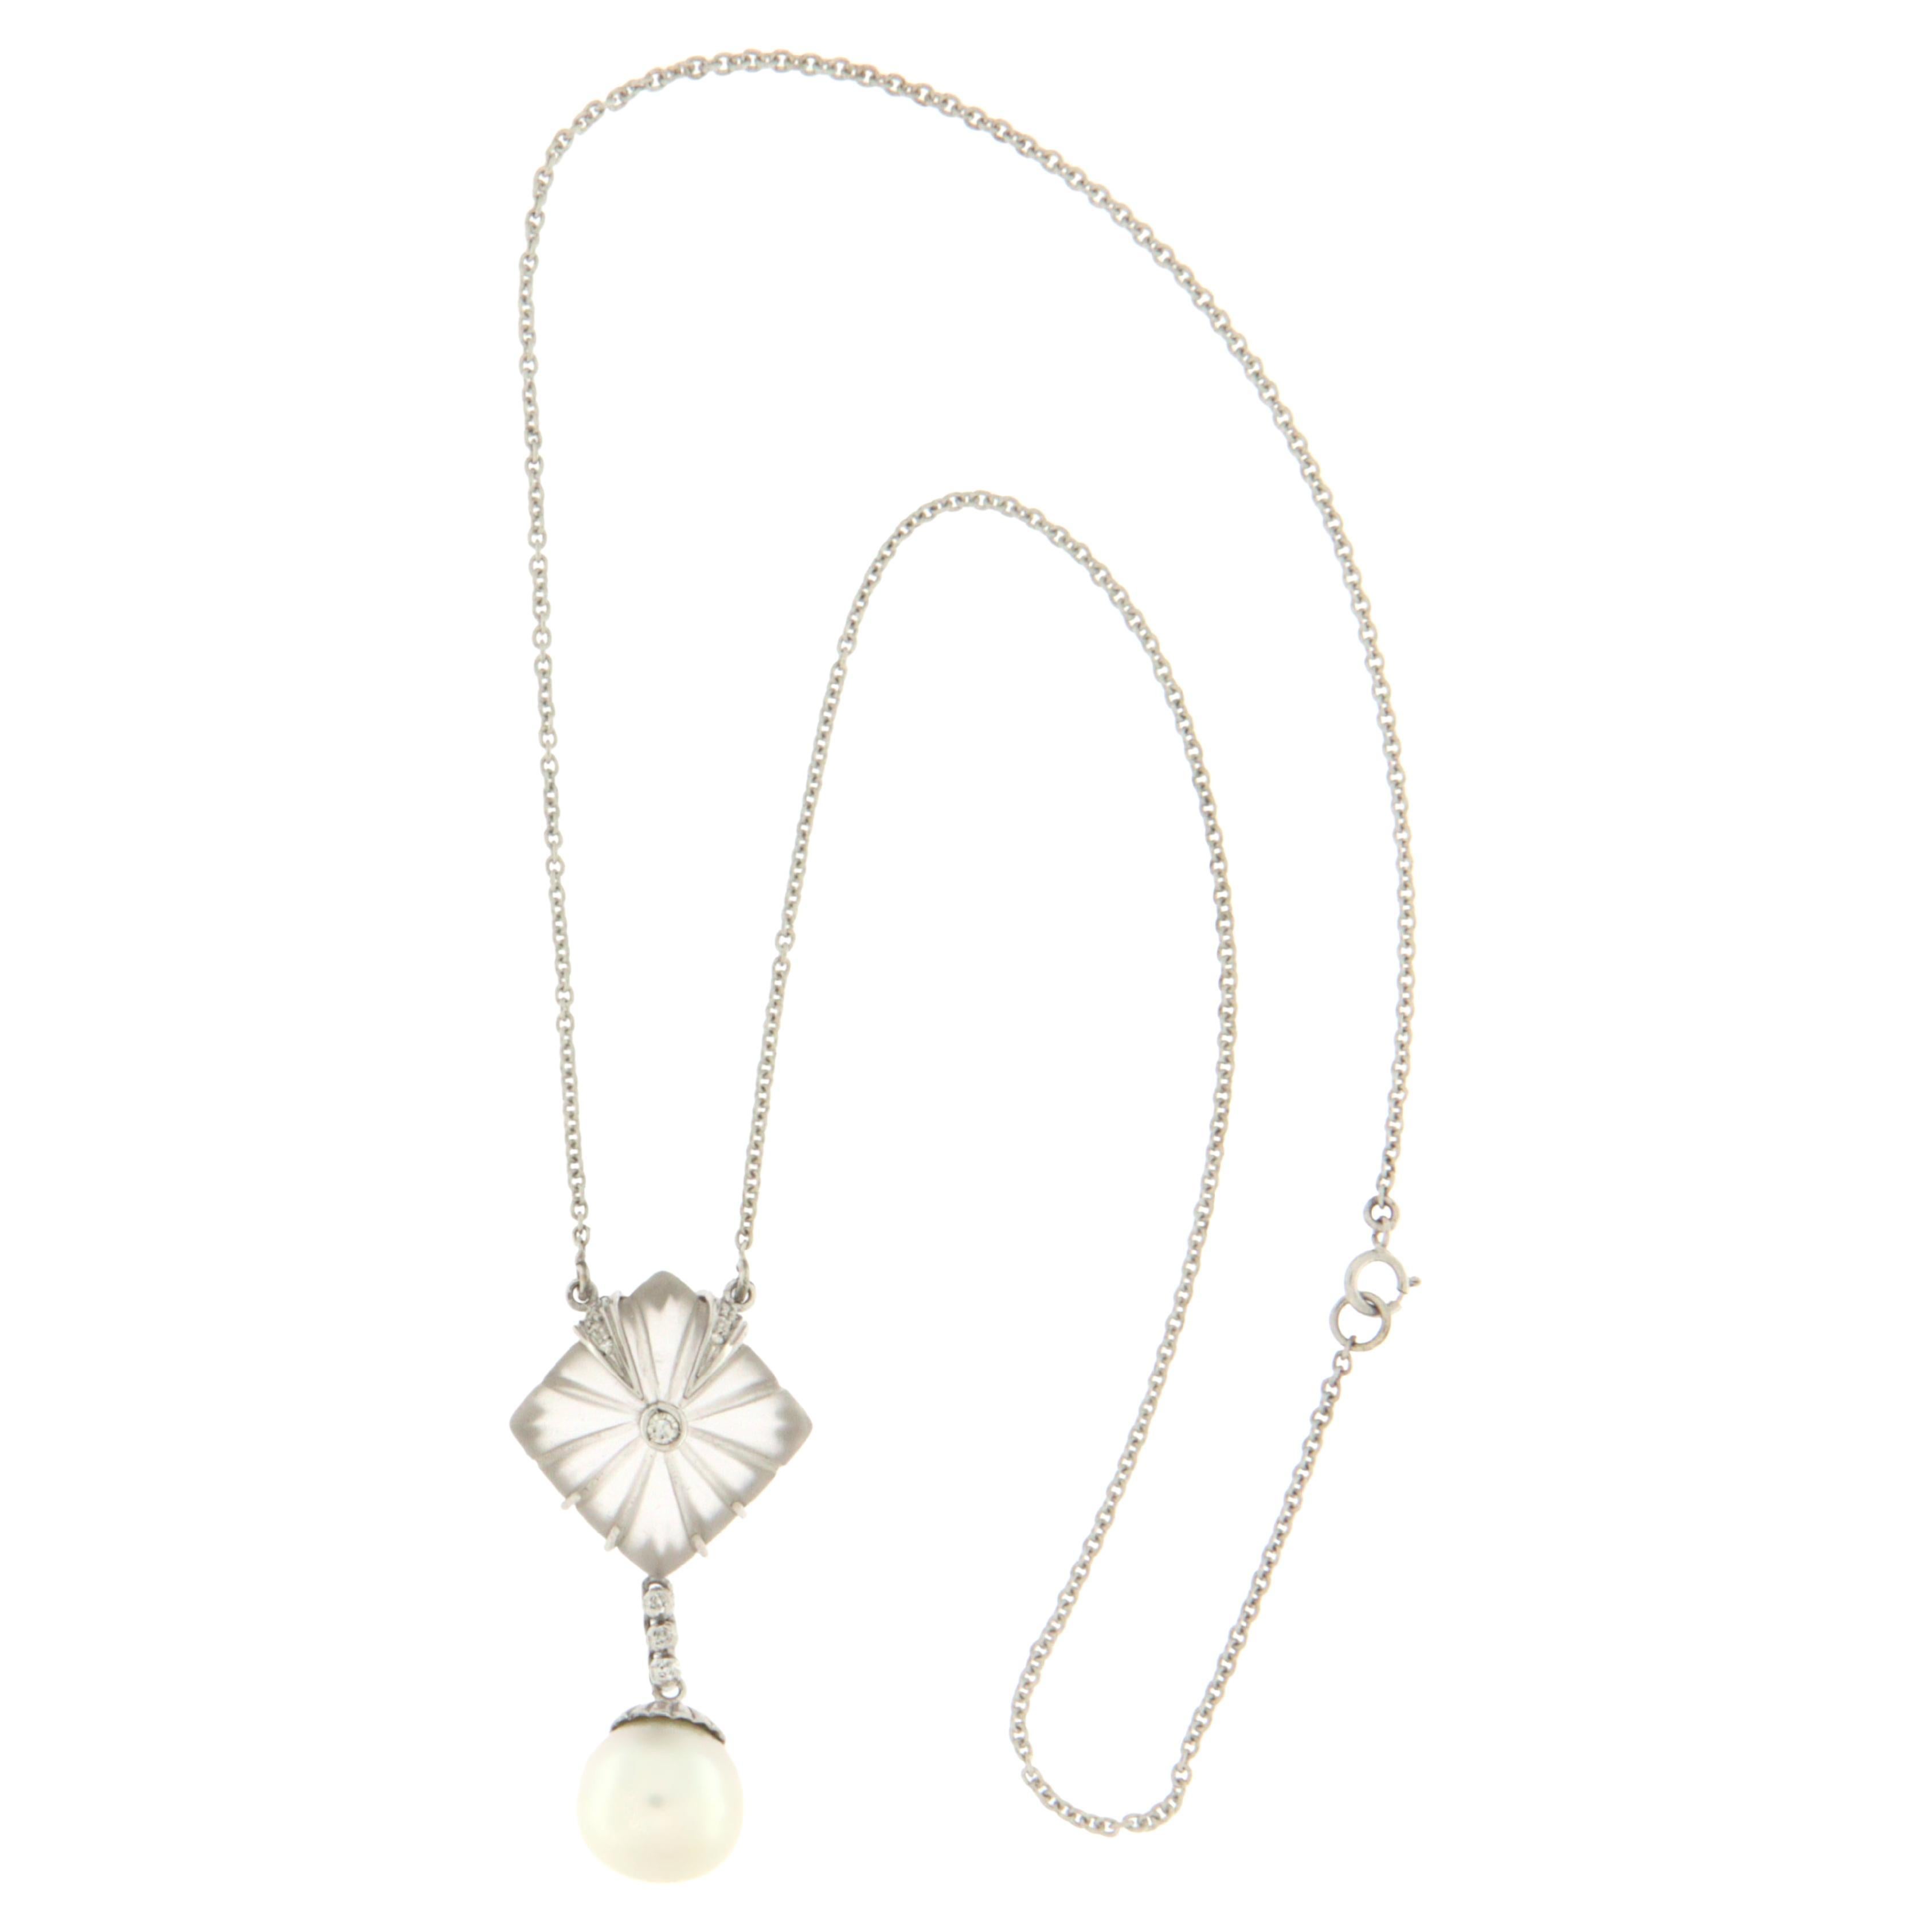 Collier pendentif en or blanc 18 carats avec perles, cristaux de roche et diamants